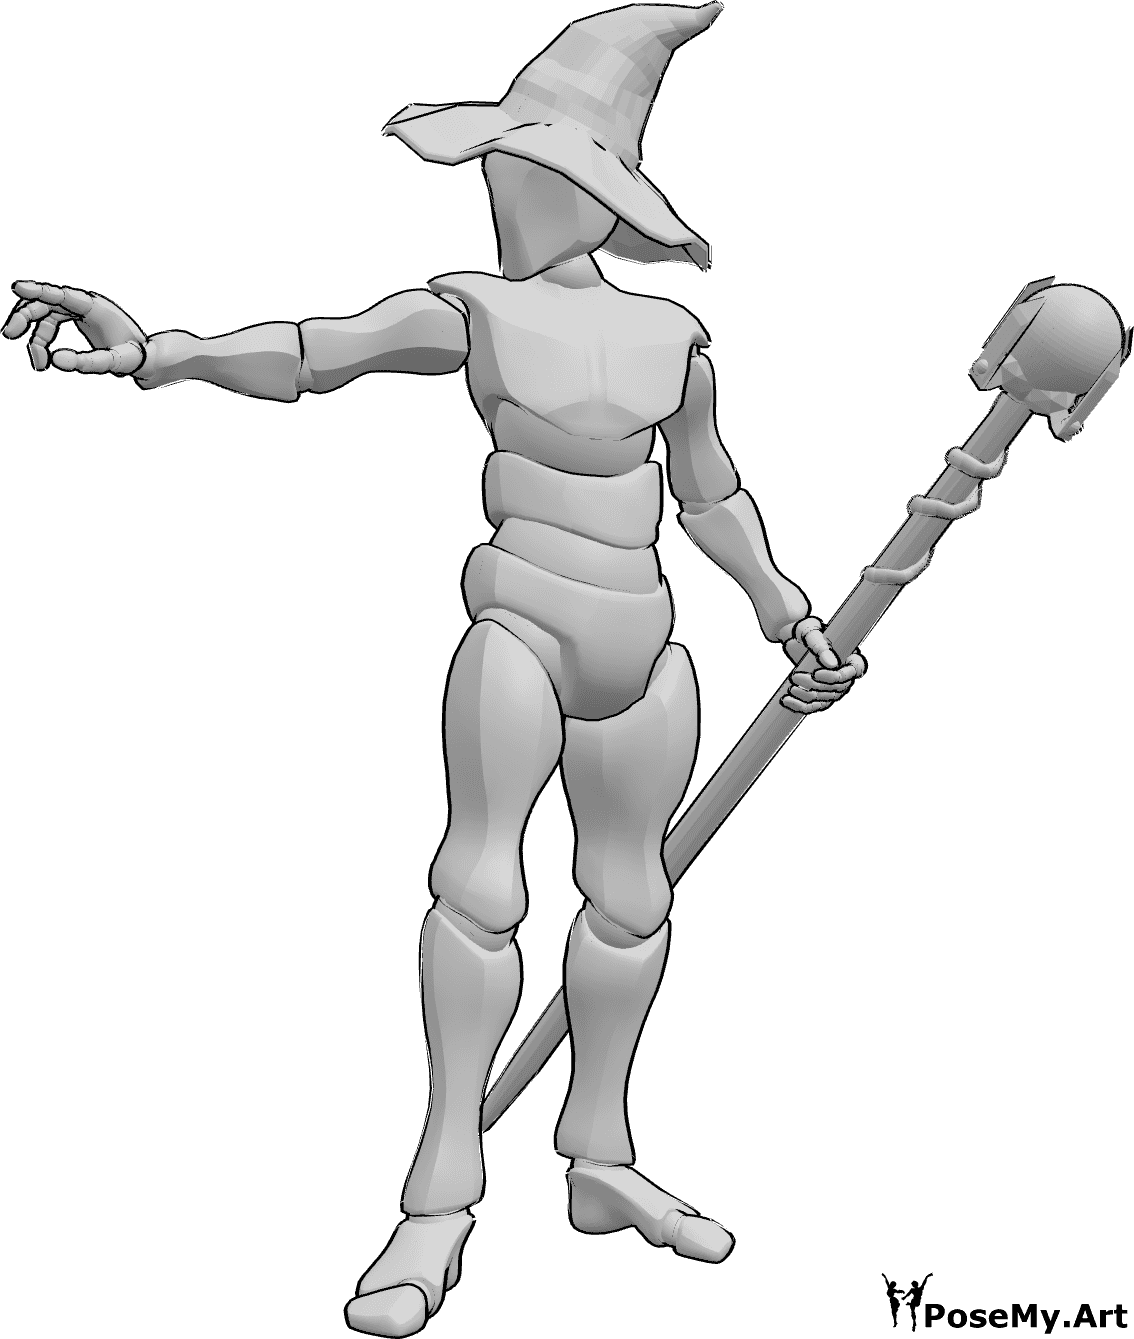 Referencia de poses- Pose de hechicero - Mago masculino de pie, sosteniendo un bastón con la mano izquierda y lanzando un hechizo con la derecha